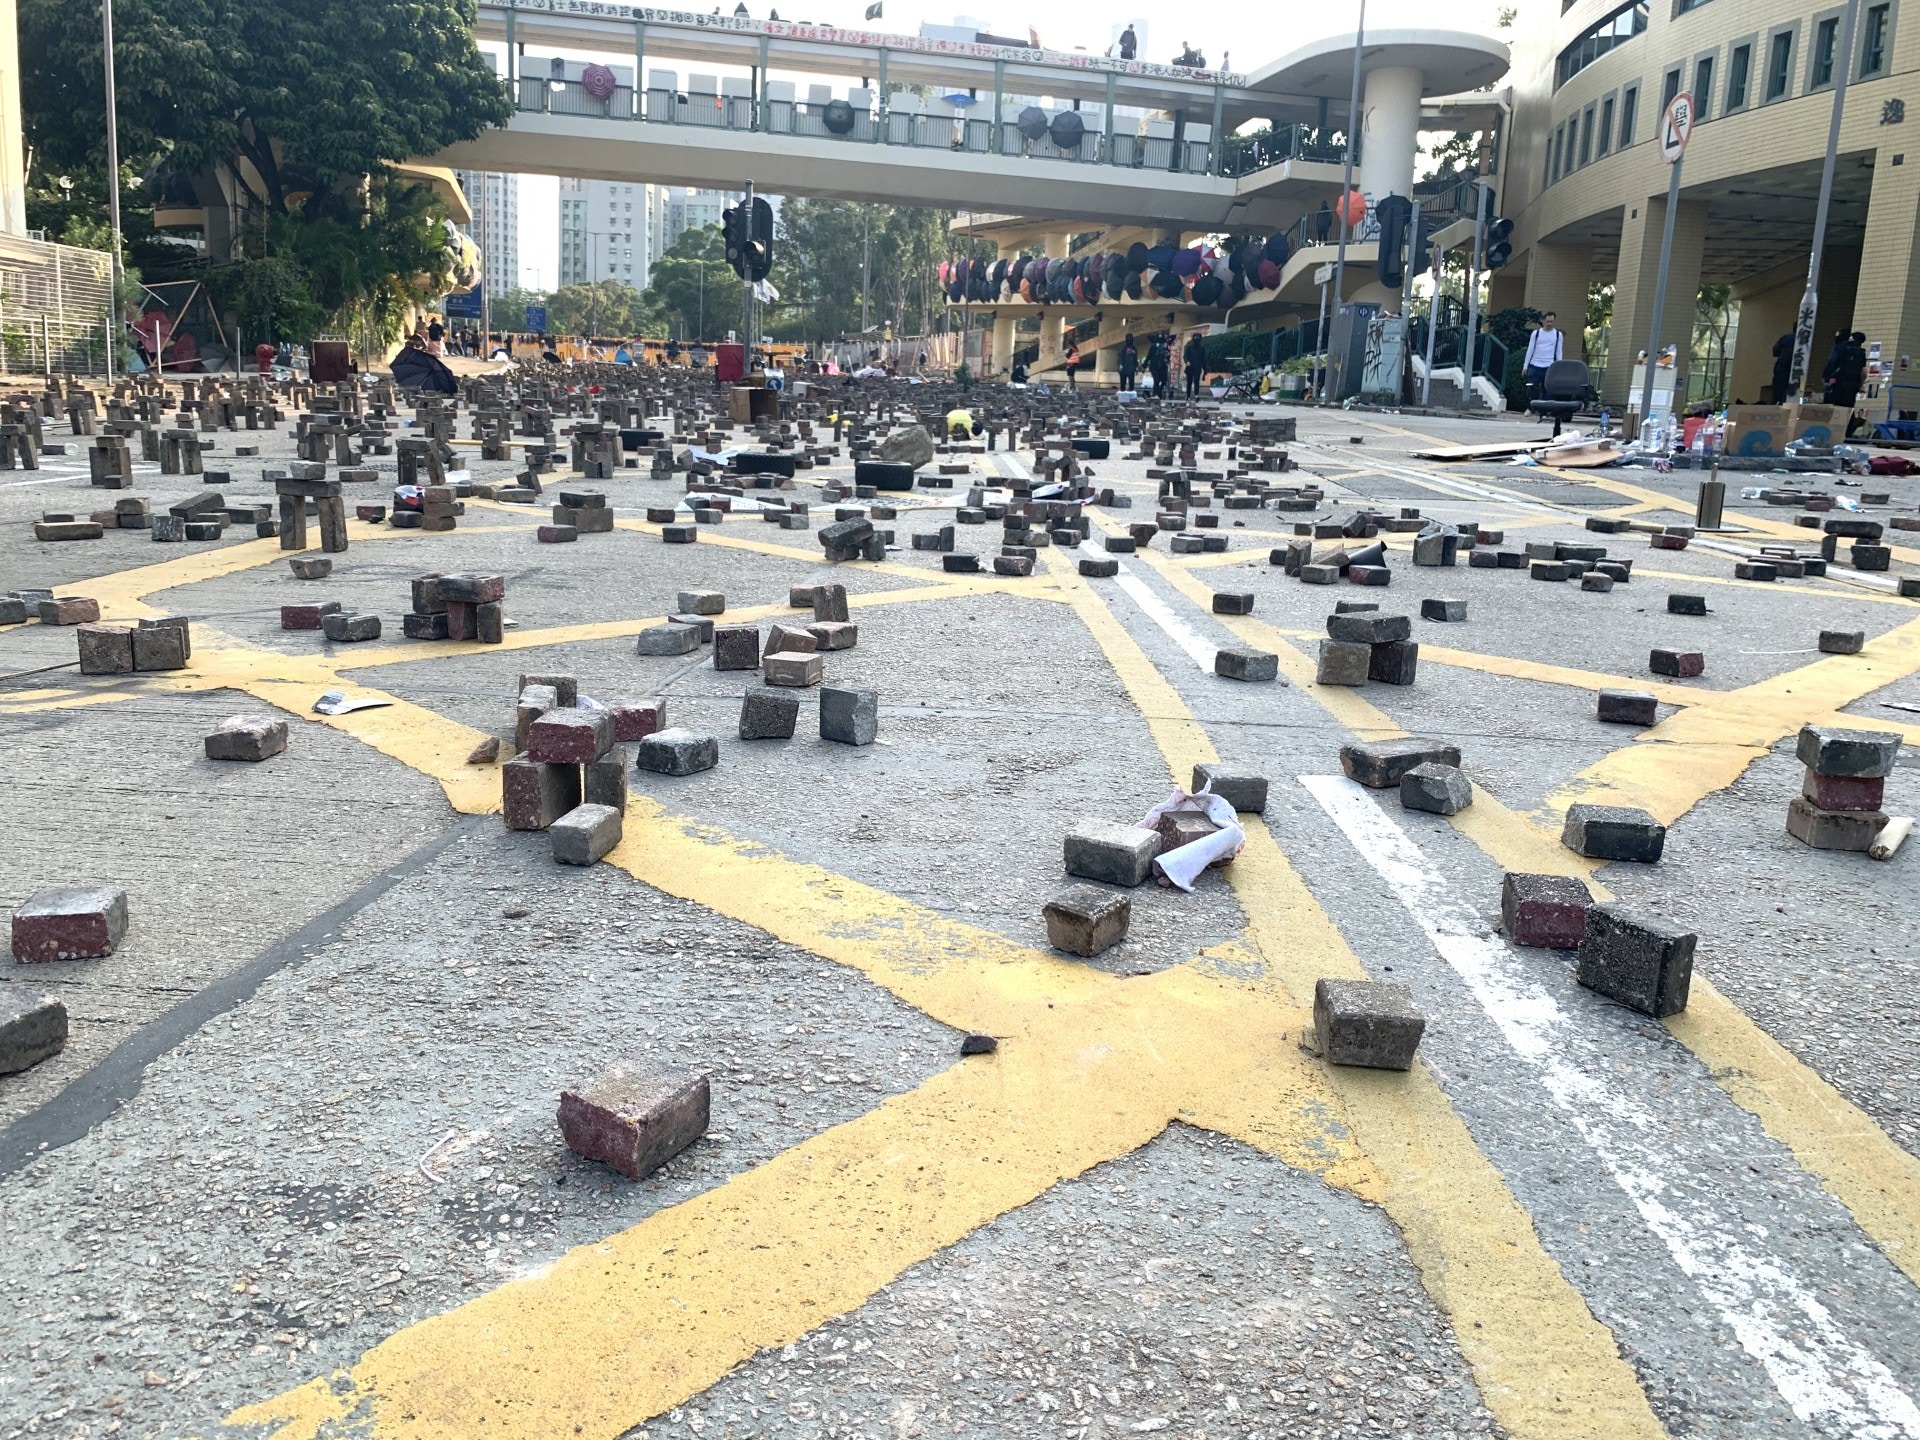 11 14 浸大 校外水馬磚陣堵路大學教授憂學生被包抄受傷 香港01 社會新聞